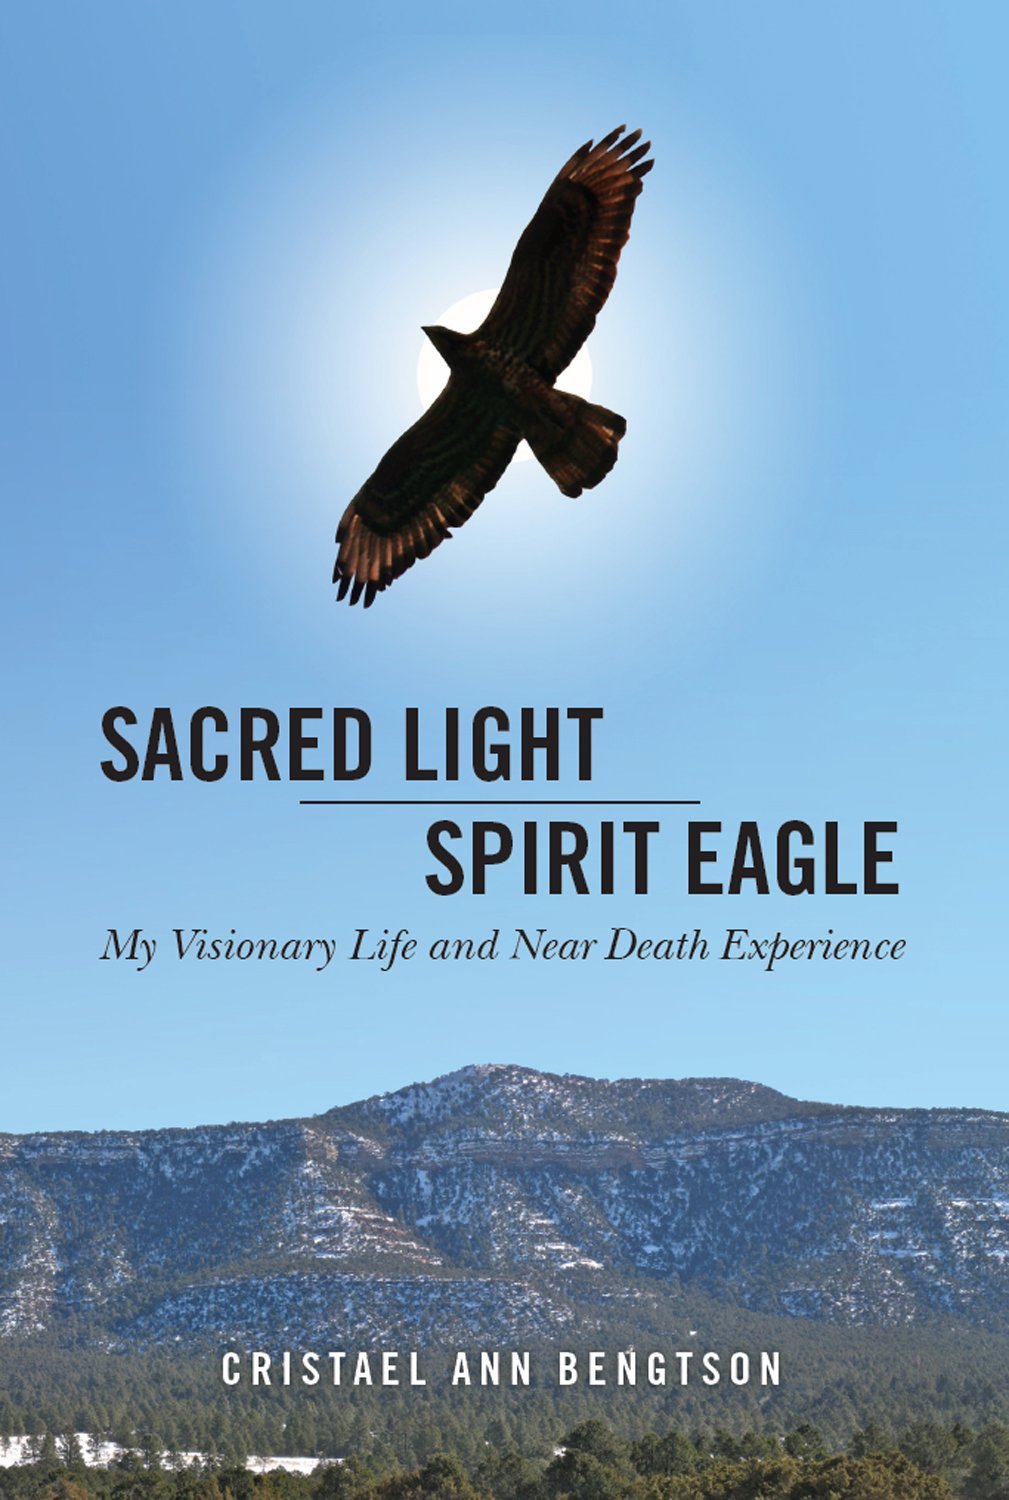 Sacred Light Spirit Eagle by Cristael Bengtson